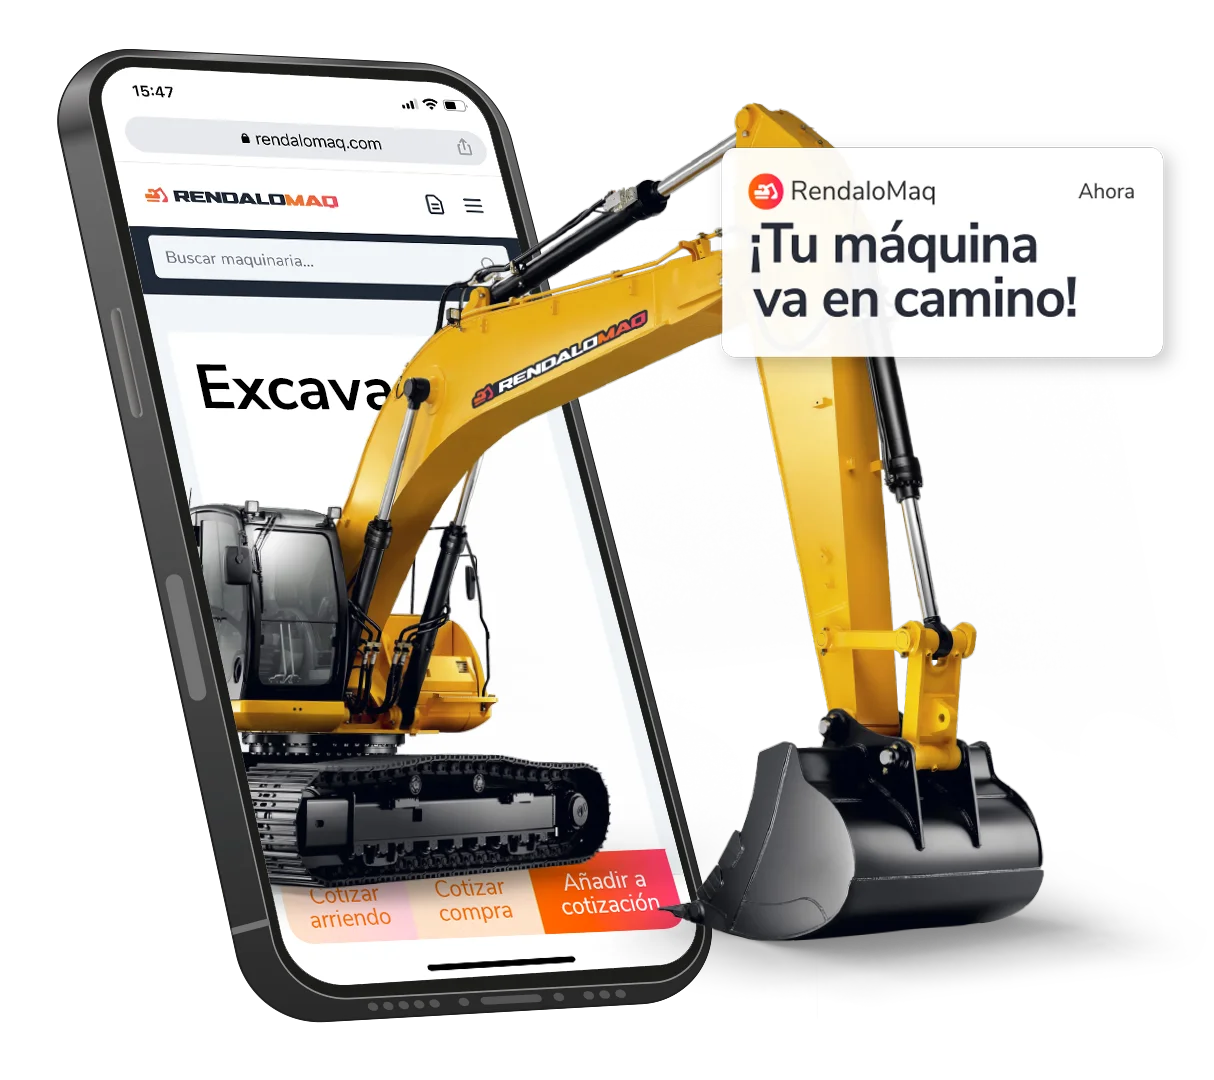 Una excavadora sale de un teléfono móvil, con la pantalla de cotización de RendaloMaq